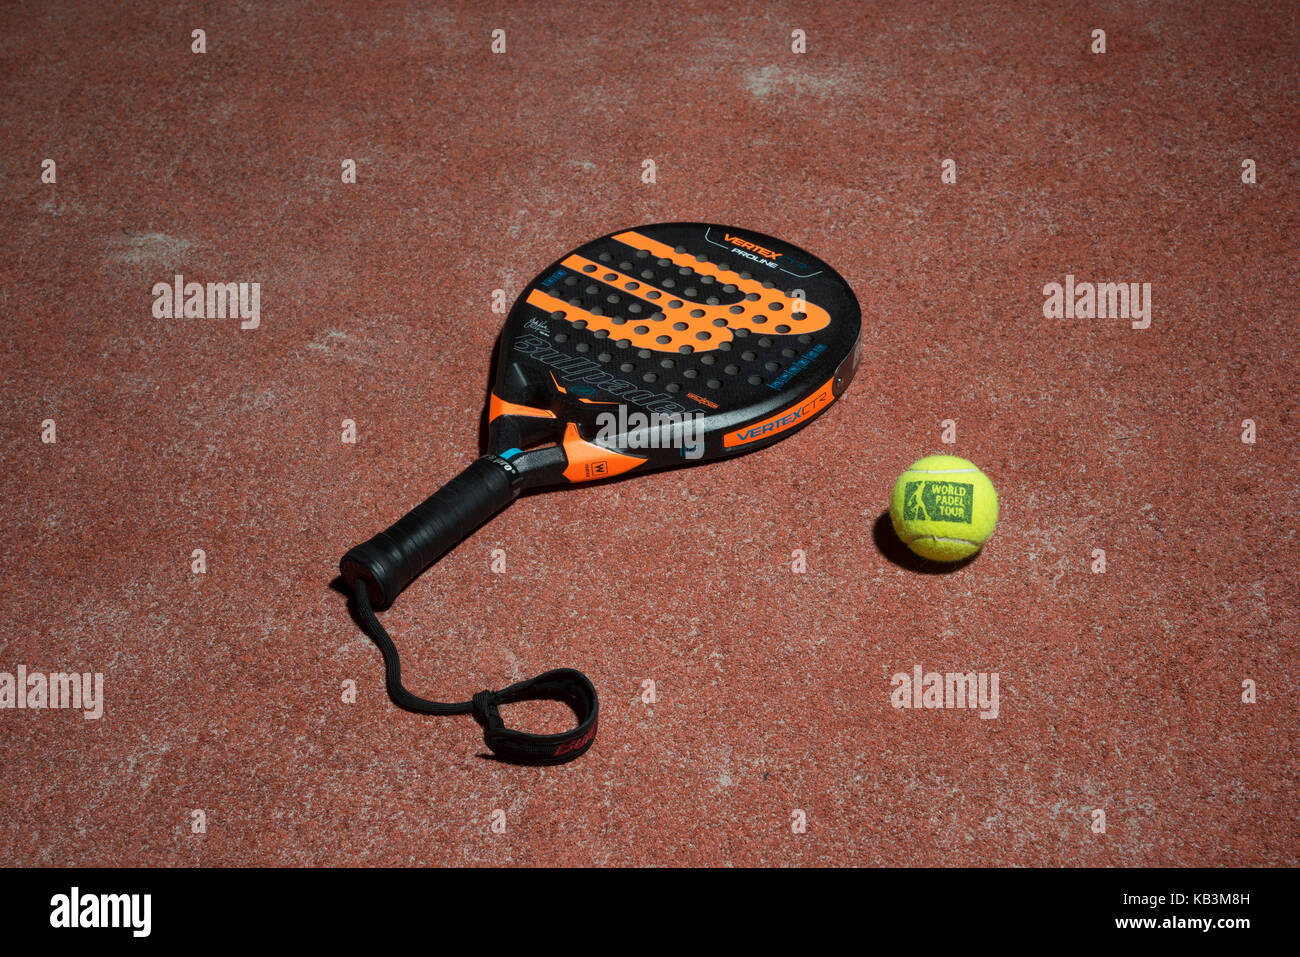 Padel raqueta de tenis y pelotas de padel en un campo Foto de stock